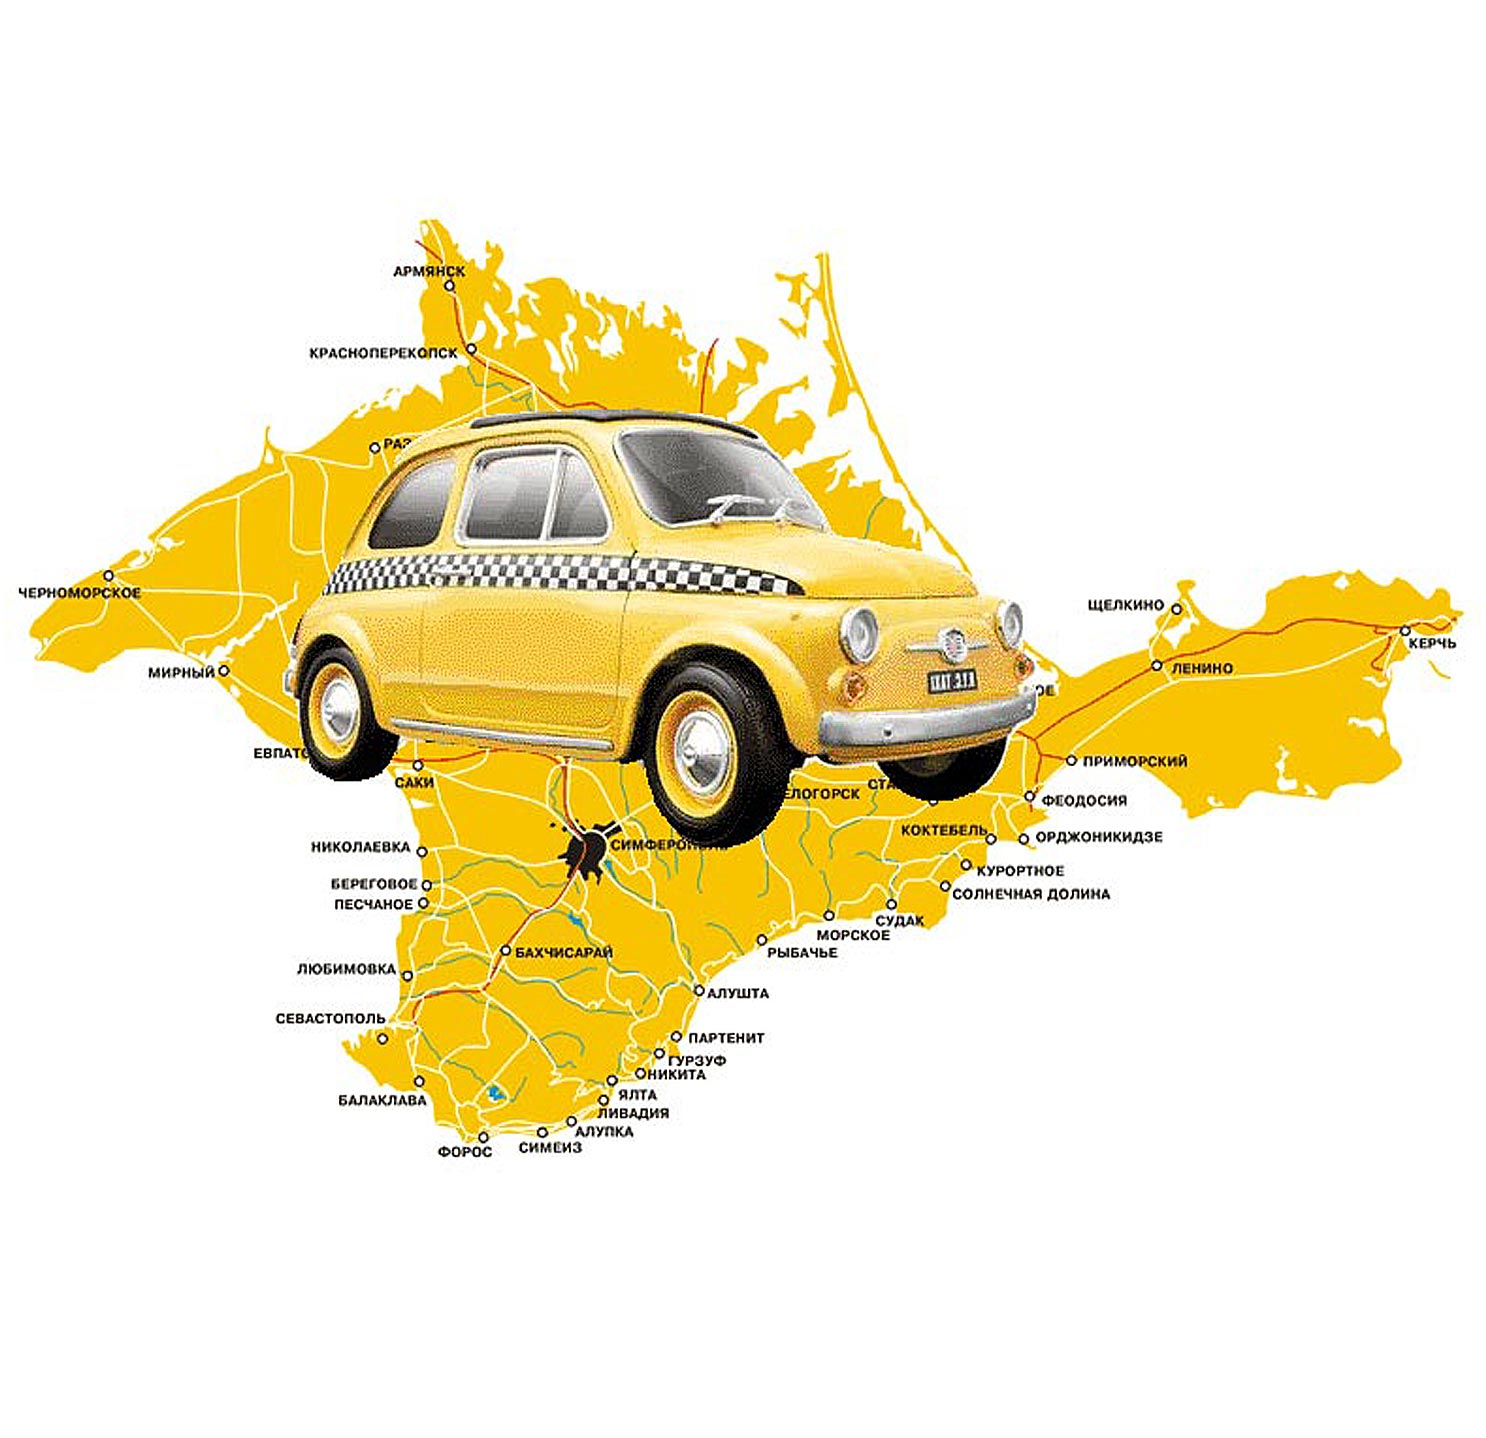 Работа в такси в Крыму выгодно и легально taxiparks.ru/taxikrim.html